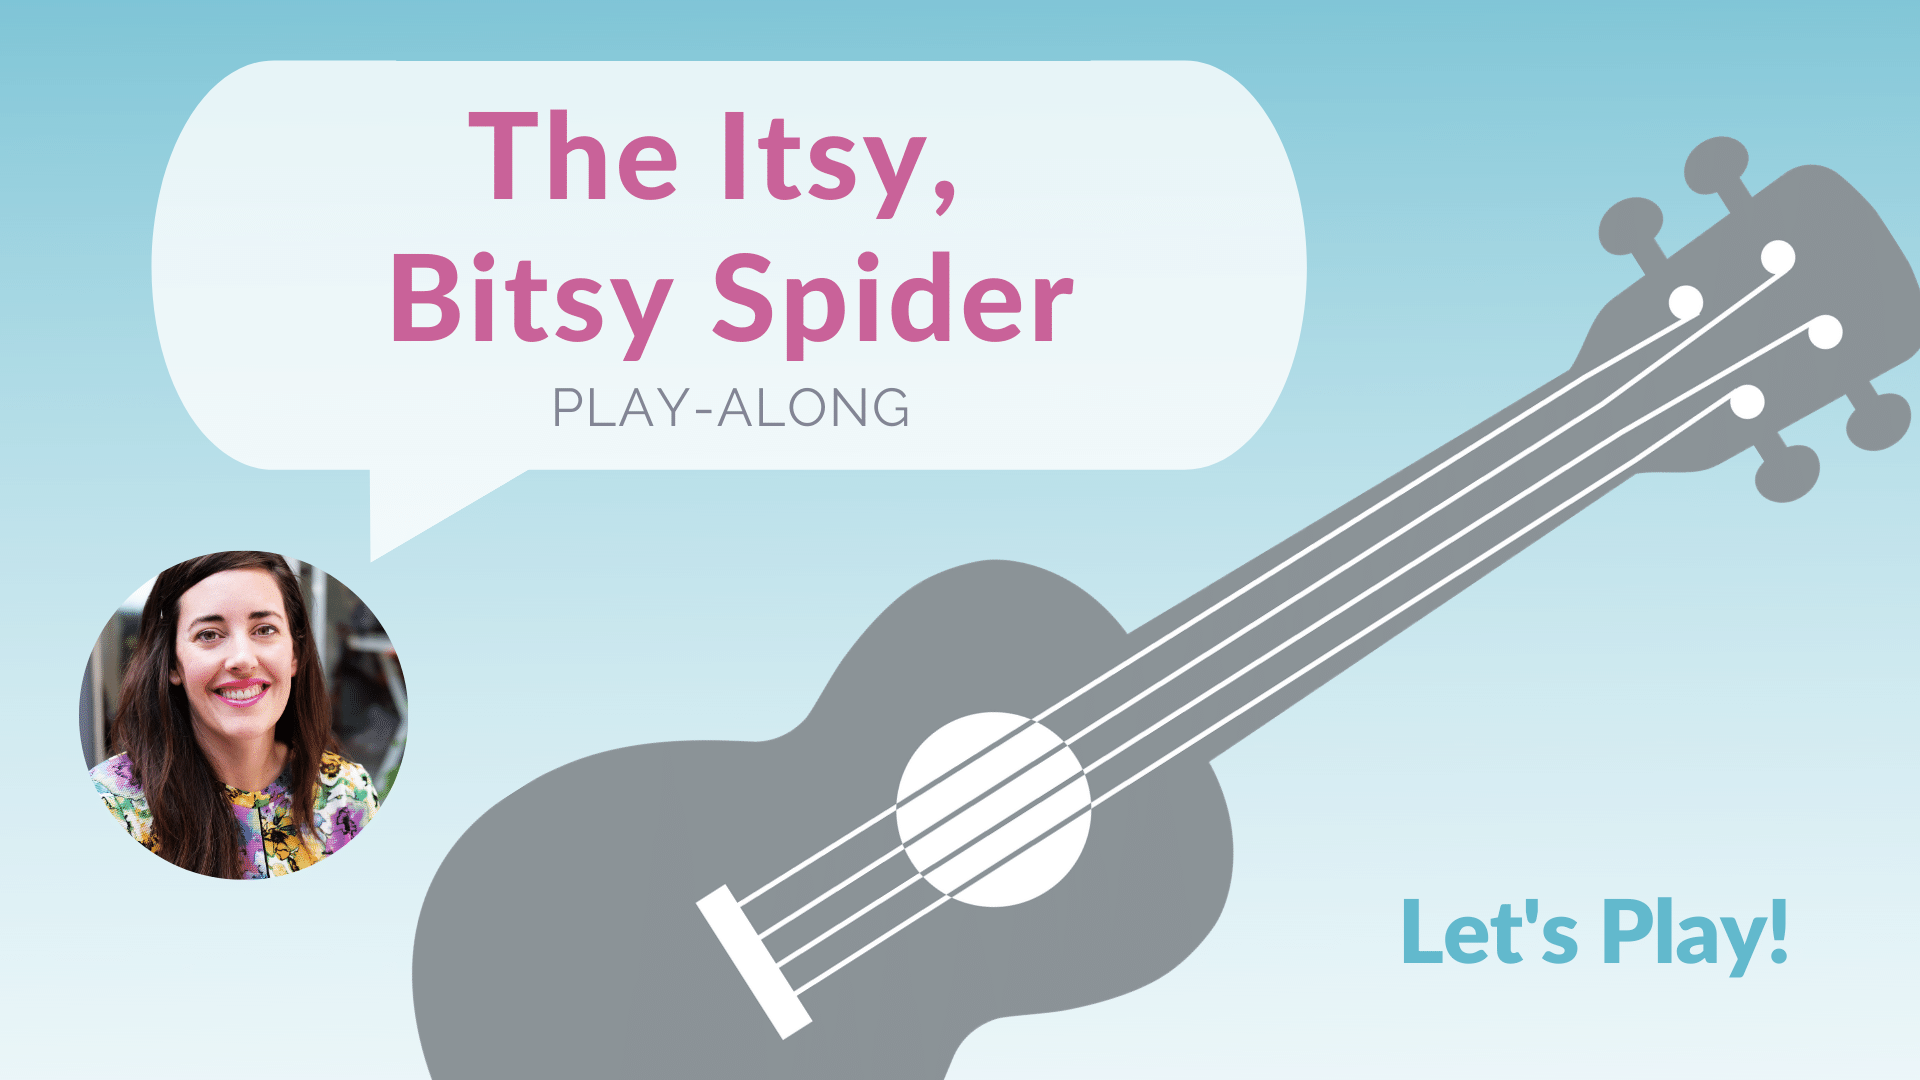 The Itsy, Bitsy Spider